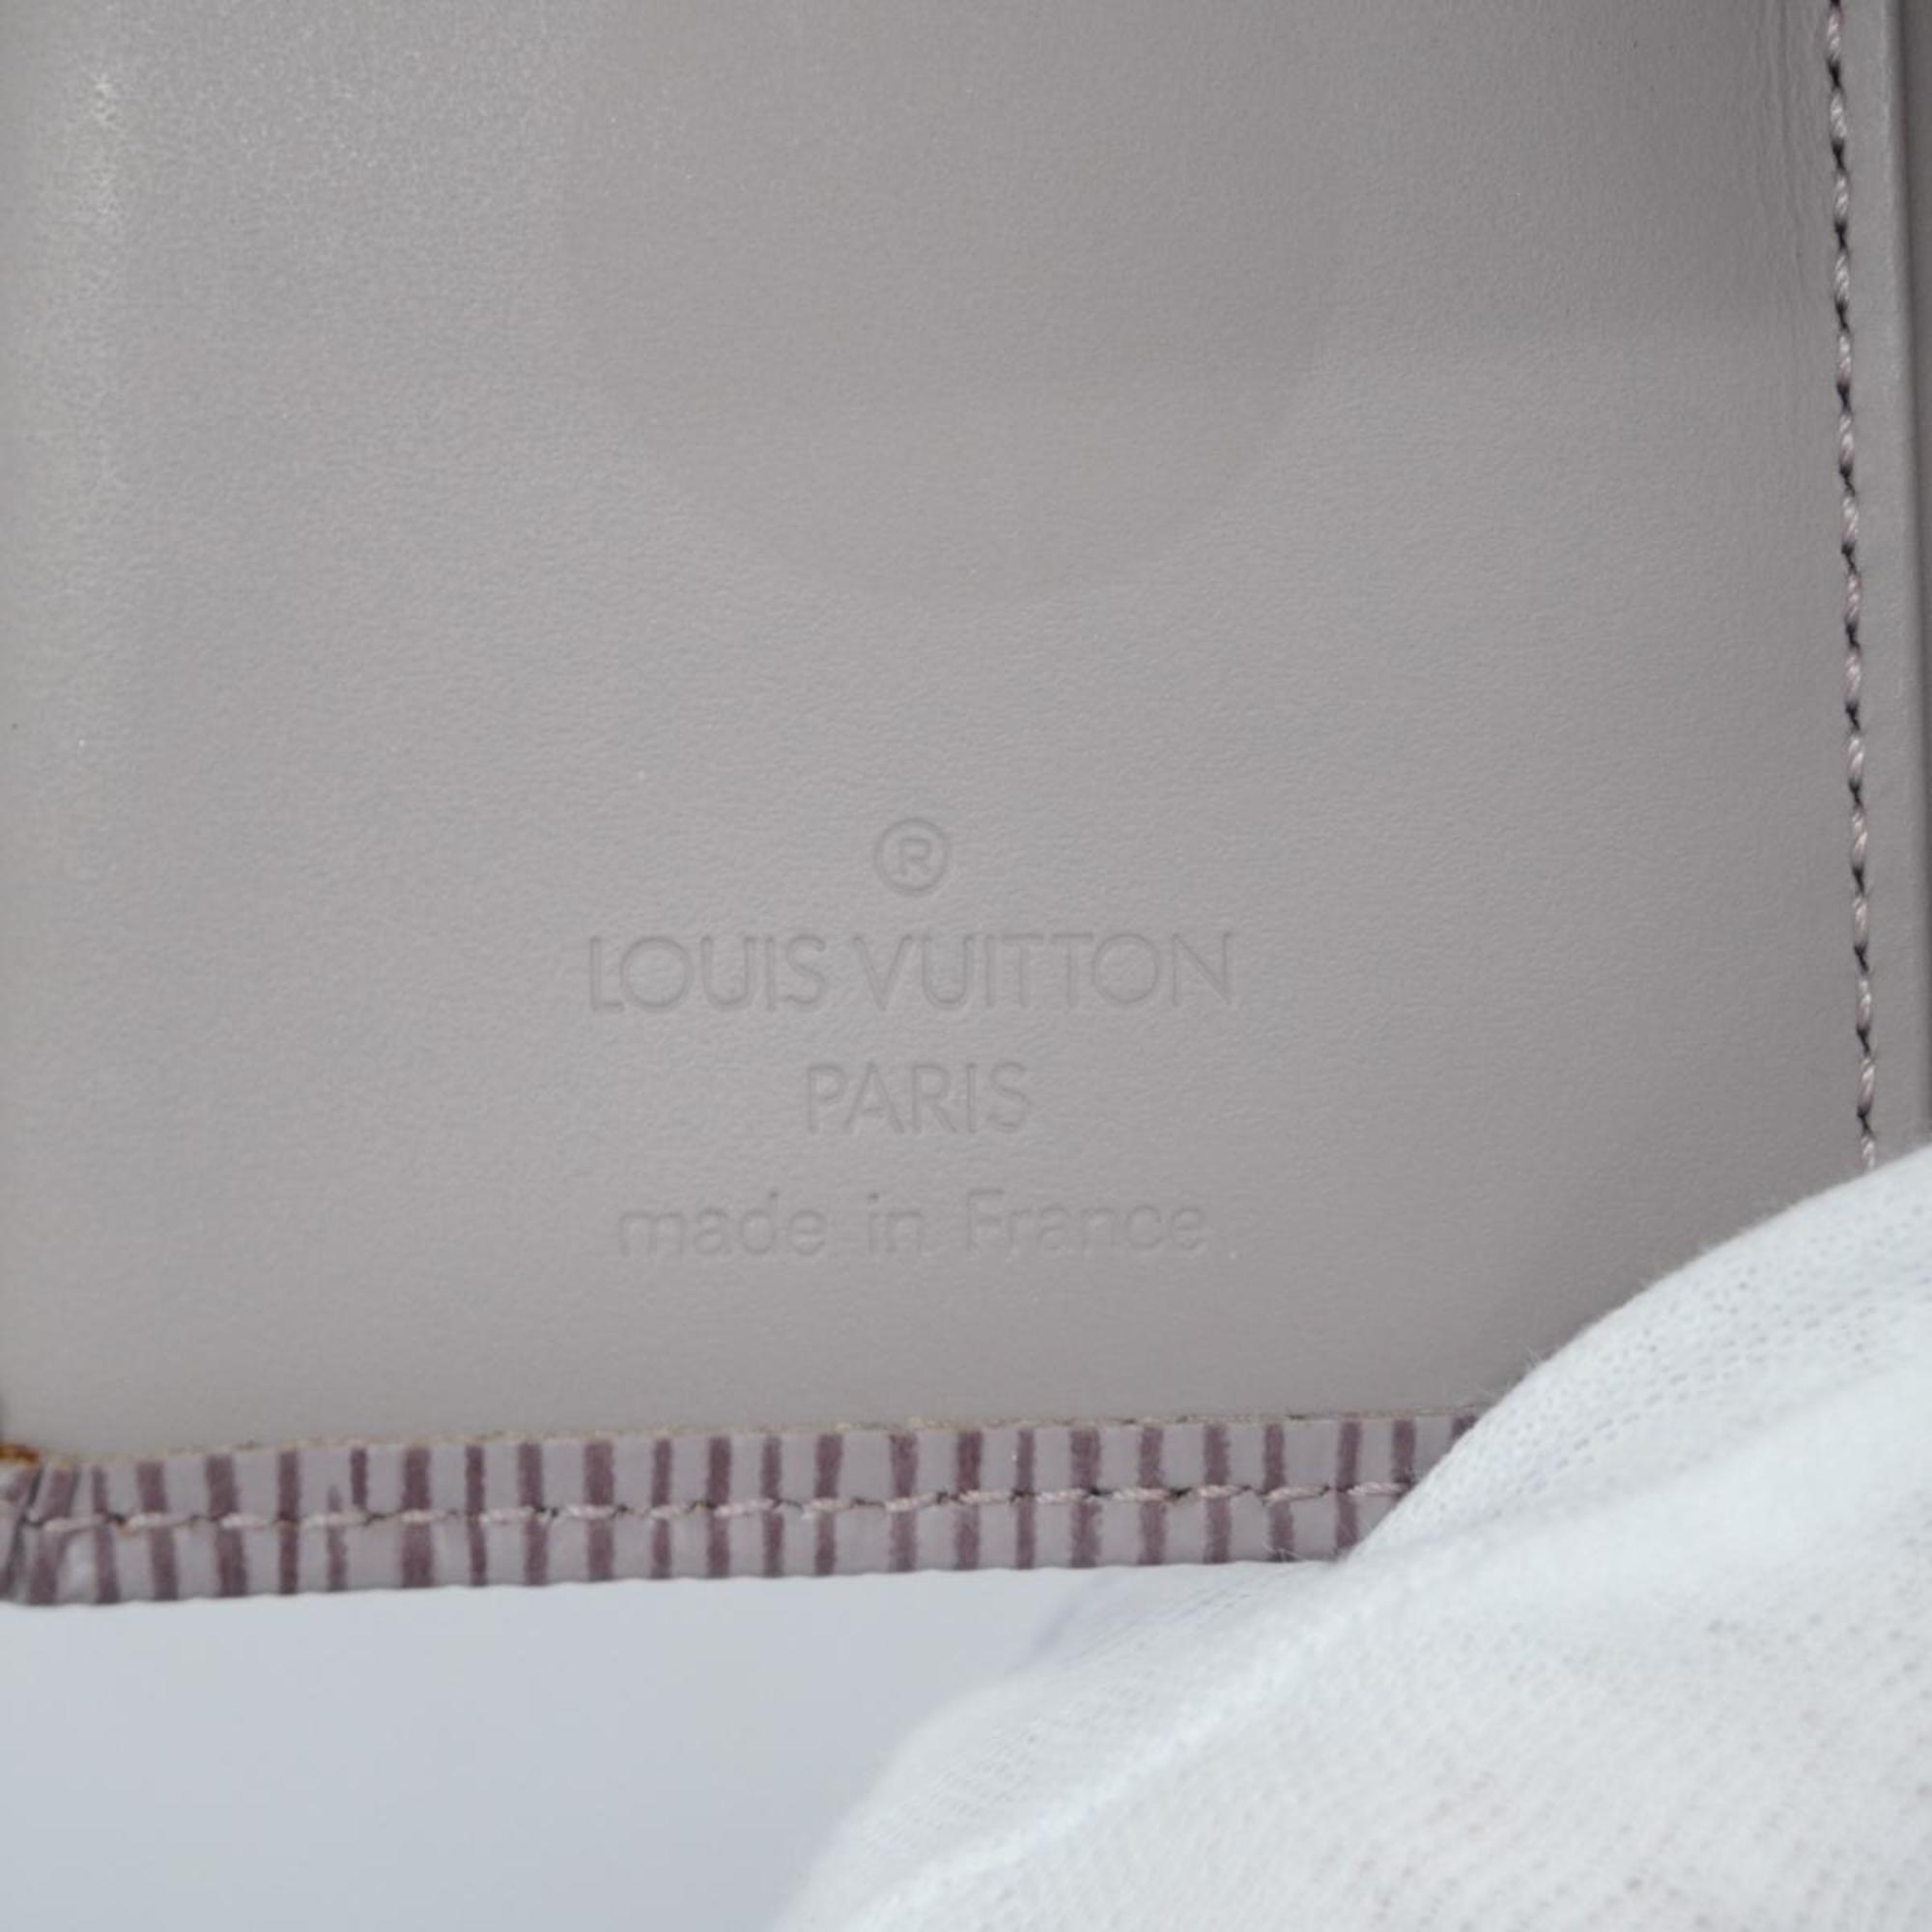 ルイ・ヴィトン(Louis Vuitton) ルイ・ヴィトン 財布 エピ ポルトモネビエヴィエノワ M6324B リラレディース